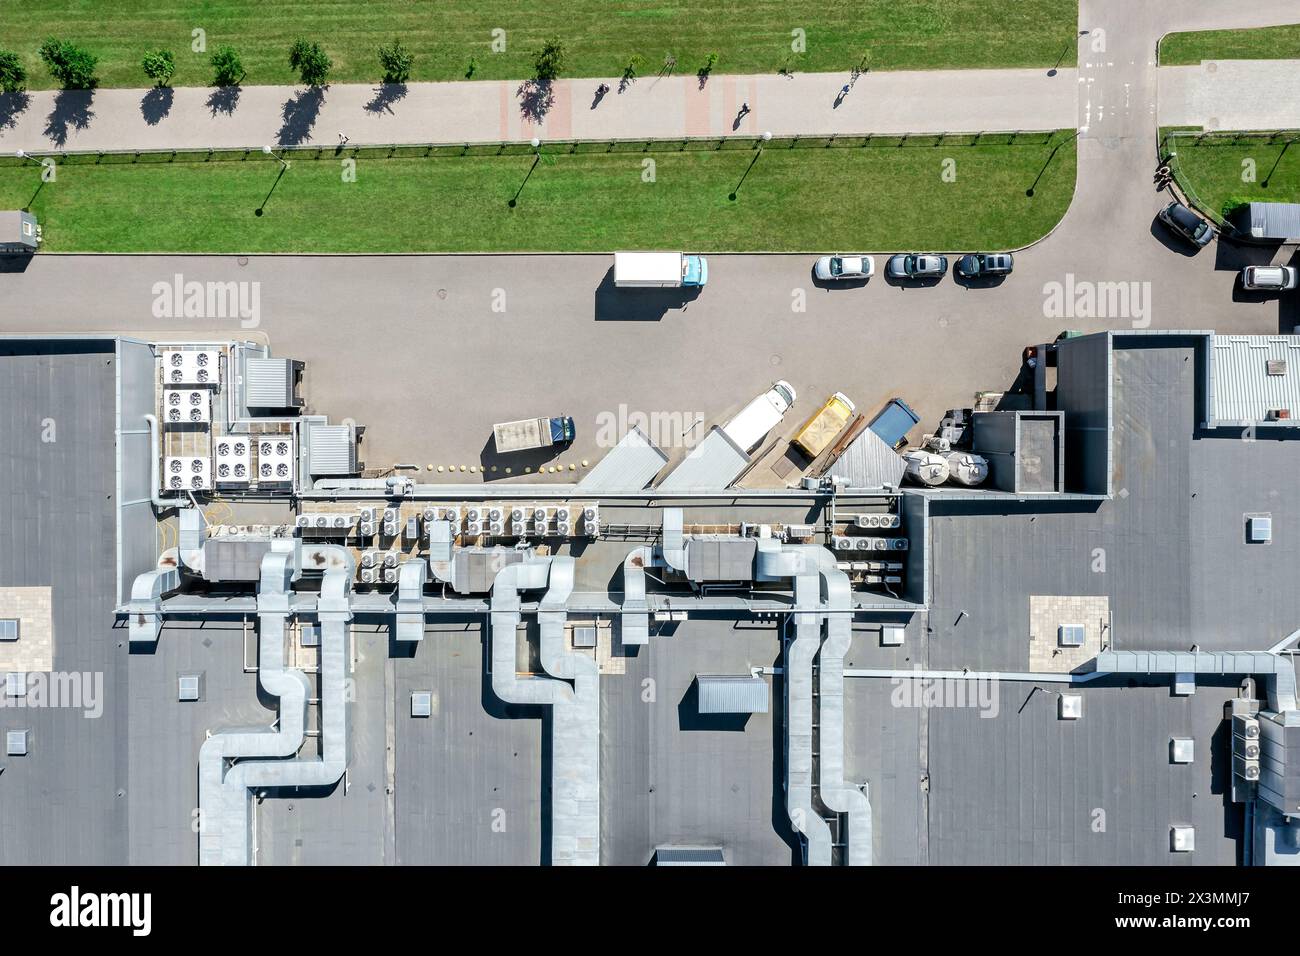 Industrielles Lüftungssystem zur Reinigung, Kühlung und Klimatisierung auf dem Supermarktdach. Draufsicht aus der Vogelperspektive. Stockfoto